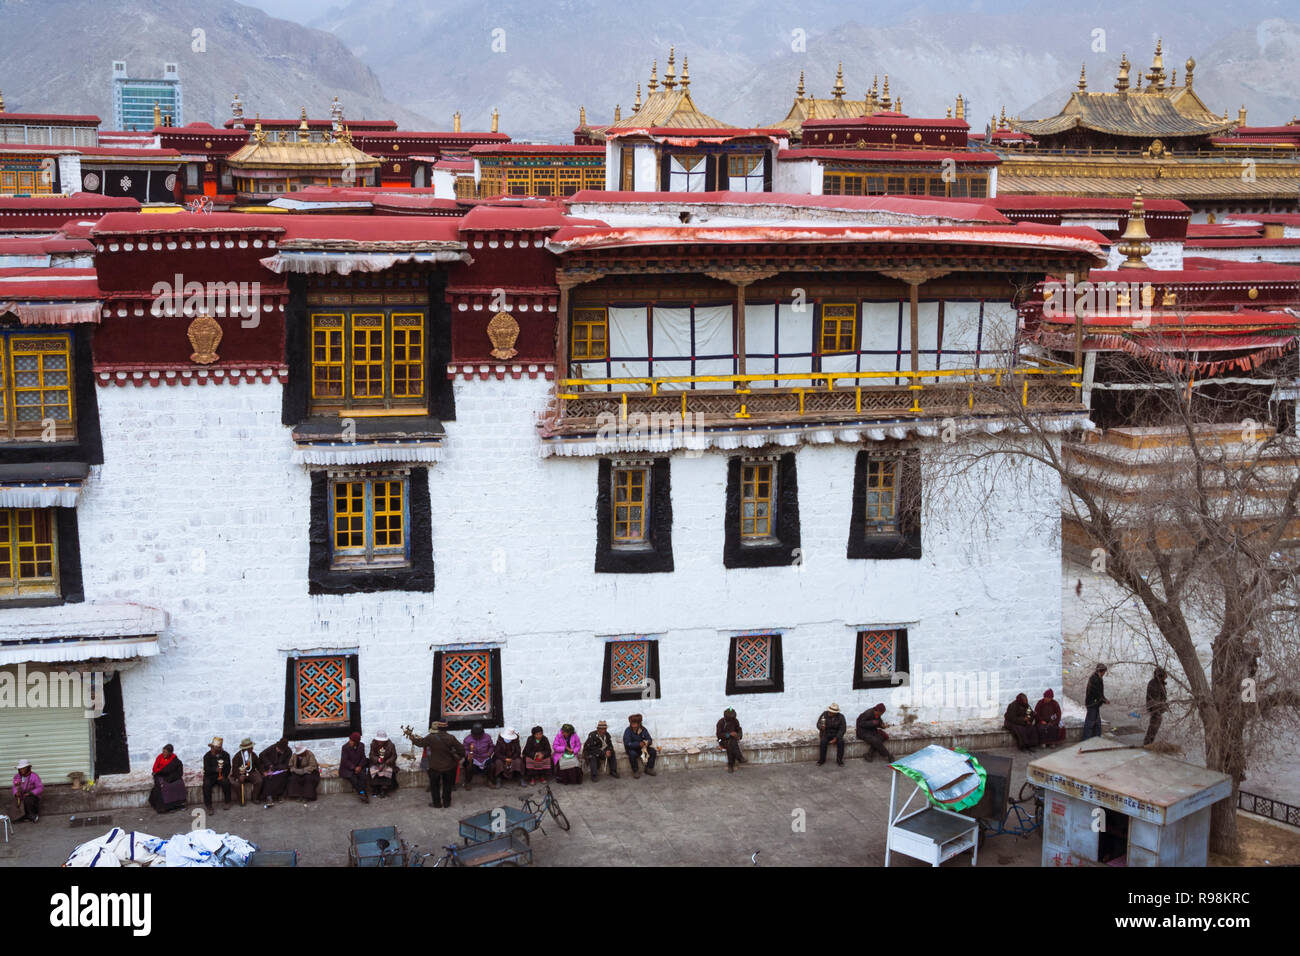 Lhasa, Tibet autonomen Region, China: Menschen sitzen auf einer Seite der Jokhang Tempel. Der Jokhang ist als der heiligste Tempel in Tibet betrachtet. Firs Stockfoto